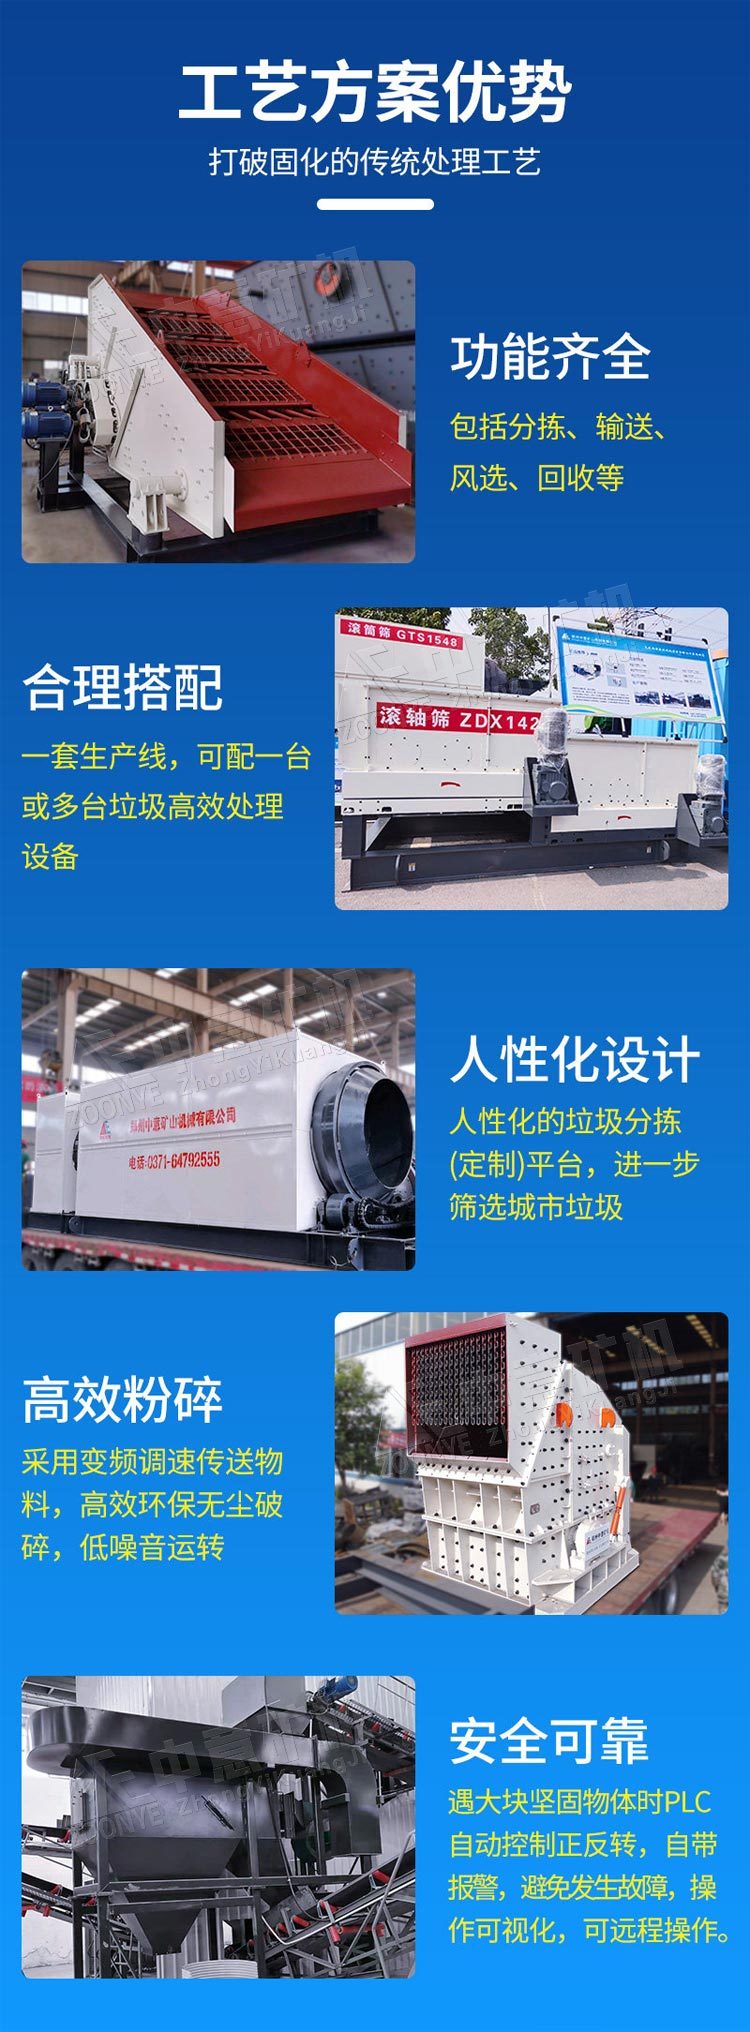 北京年产30万吨装修垃圾废料筛分如何提高分拣筛分效率liu88